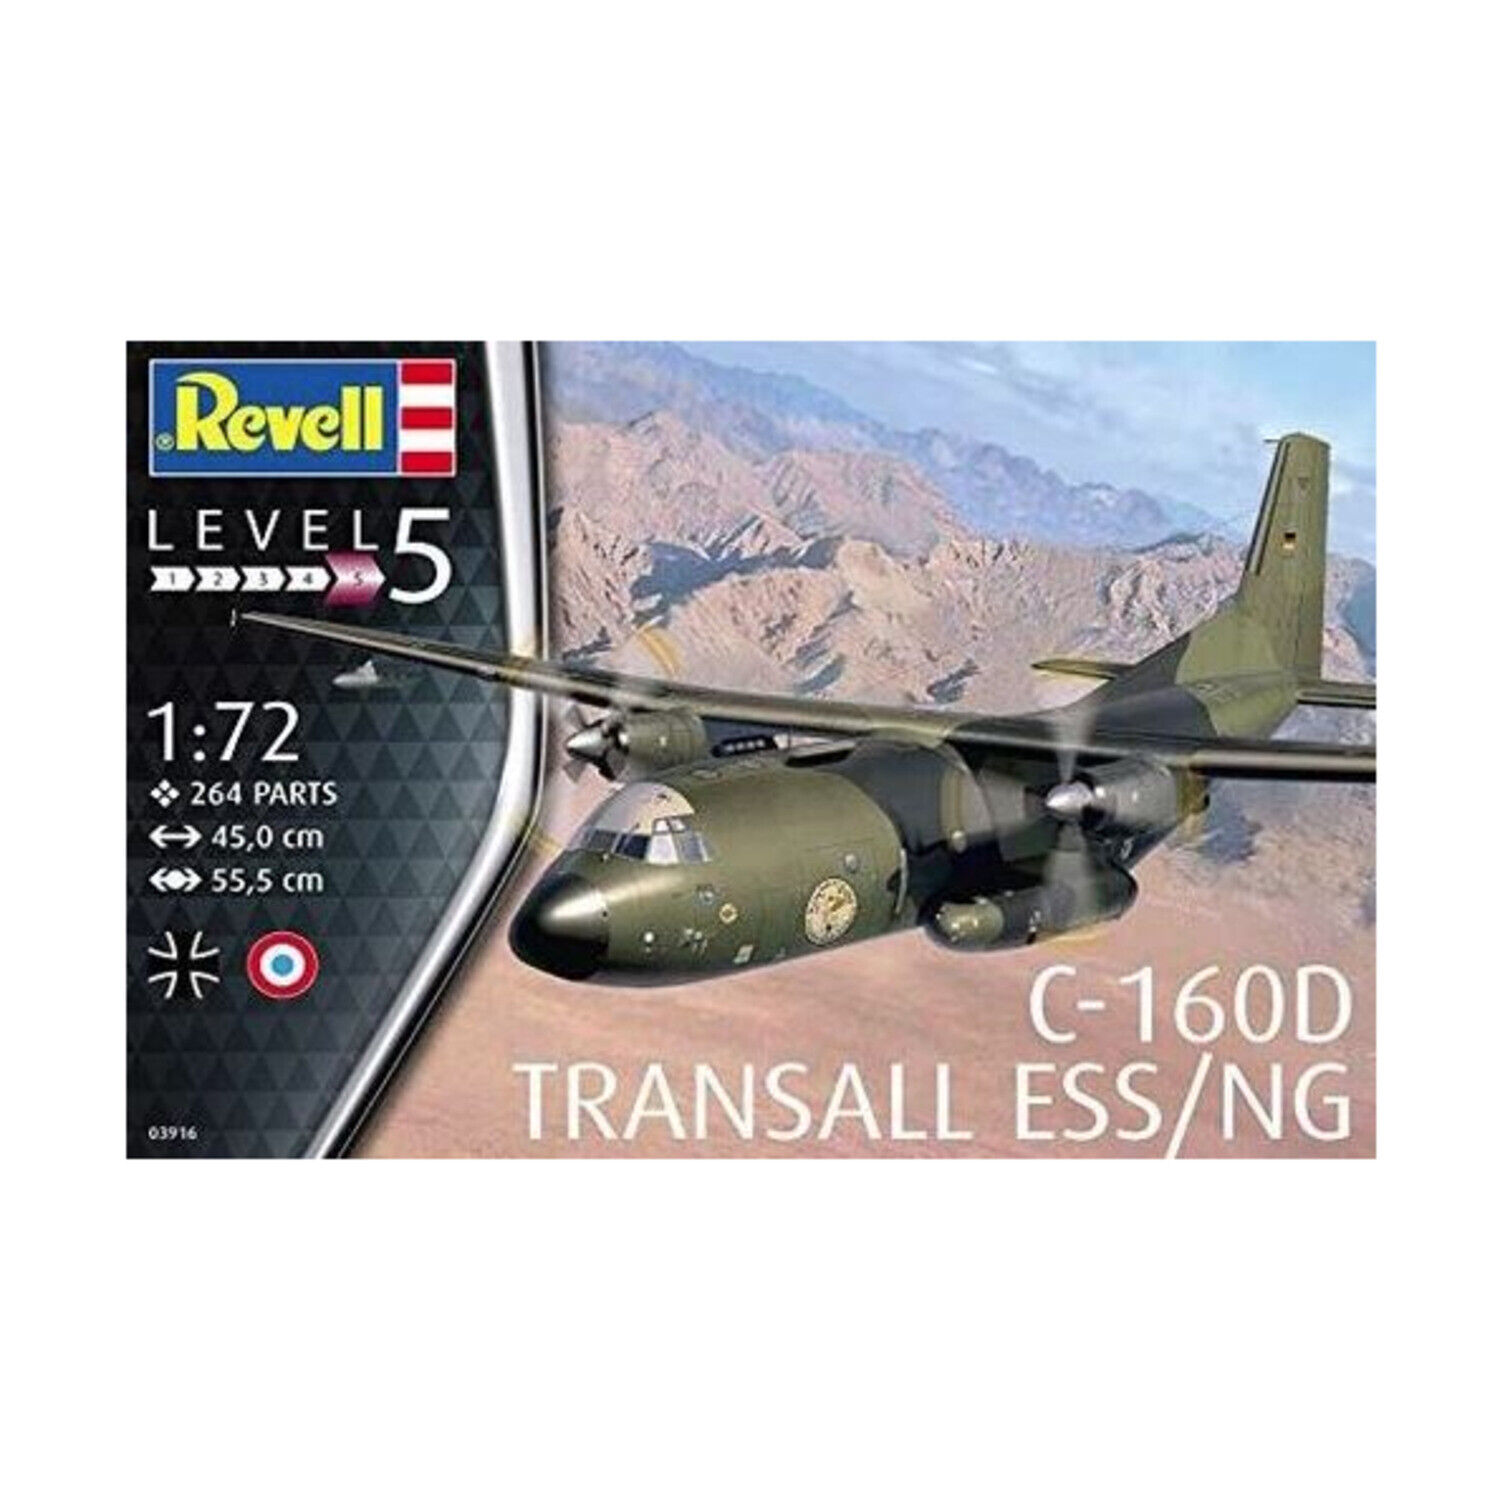 Revell/Monogram Model Kit C-160D Transall ESS/NG New